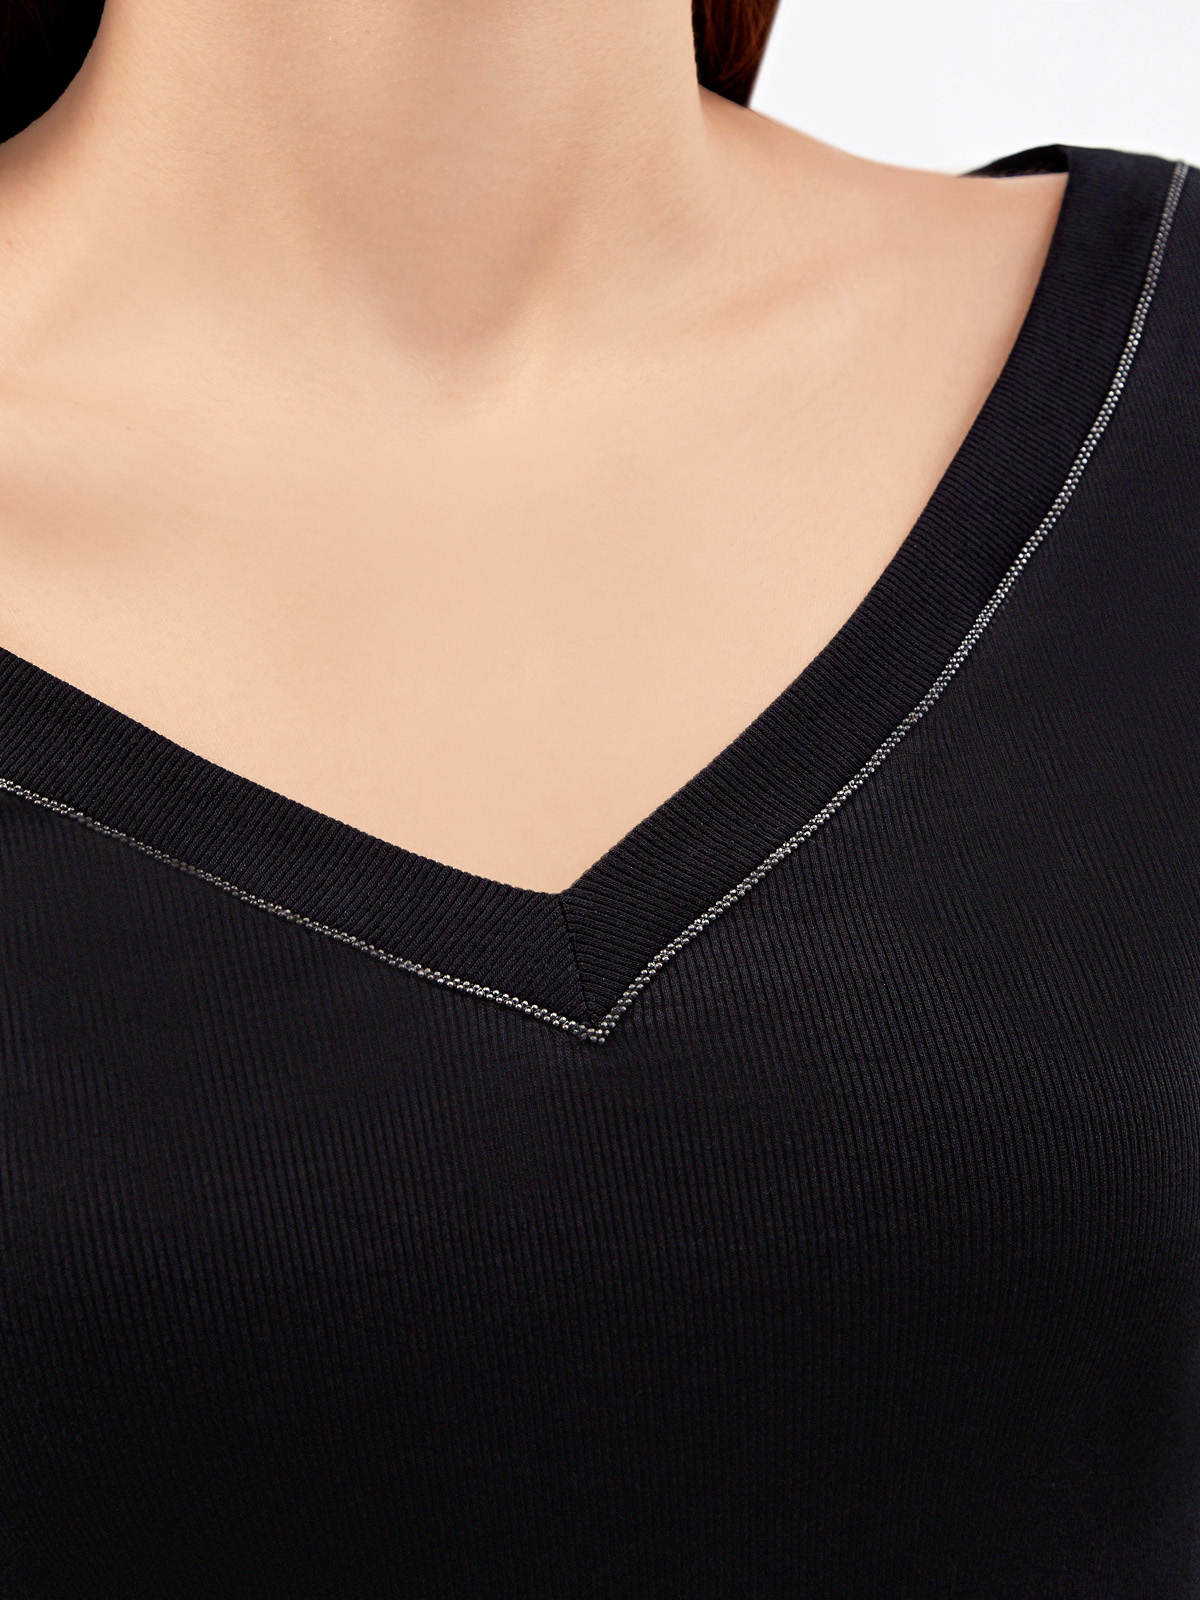 Лонгслив из эластичного джерси в рубчик с ювелирным декором BRUNELLO CUCINELLI, цвет черный, размер 40;42;38 - фото 5